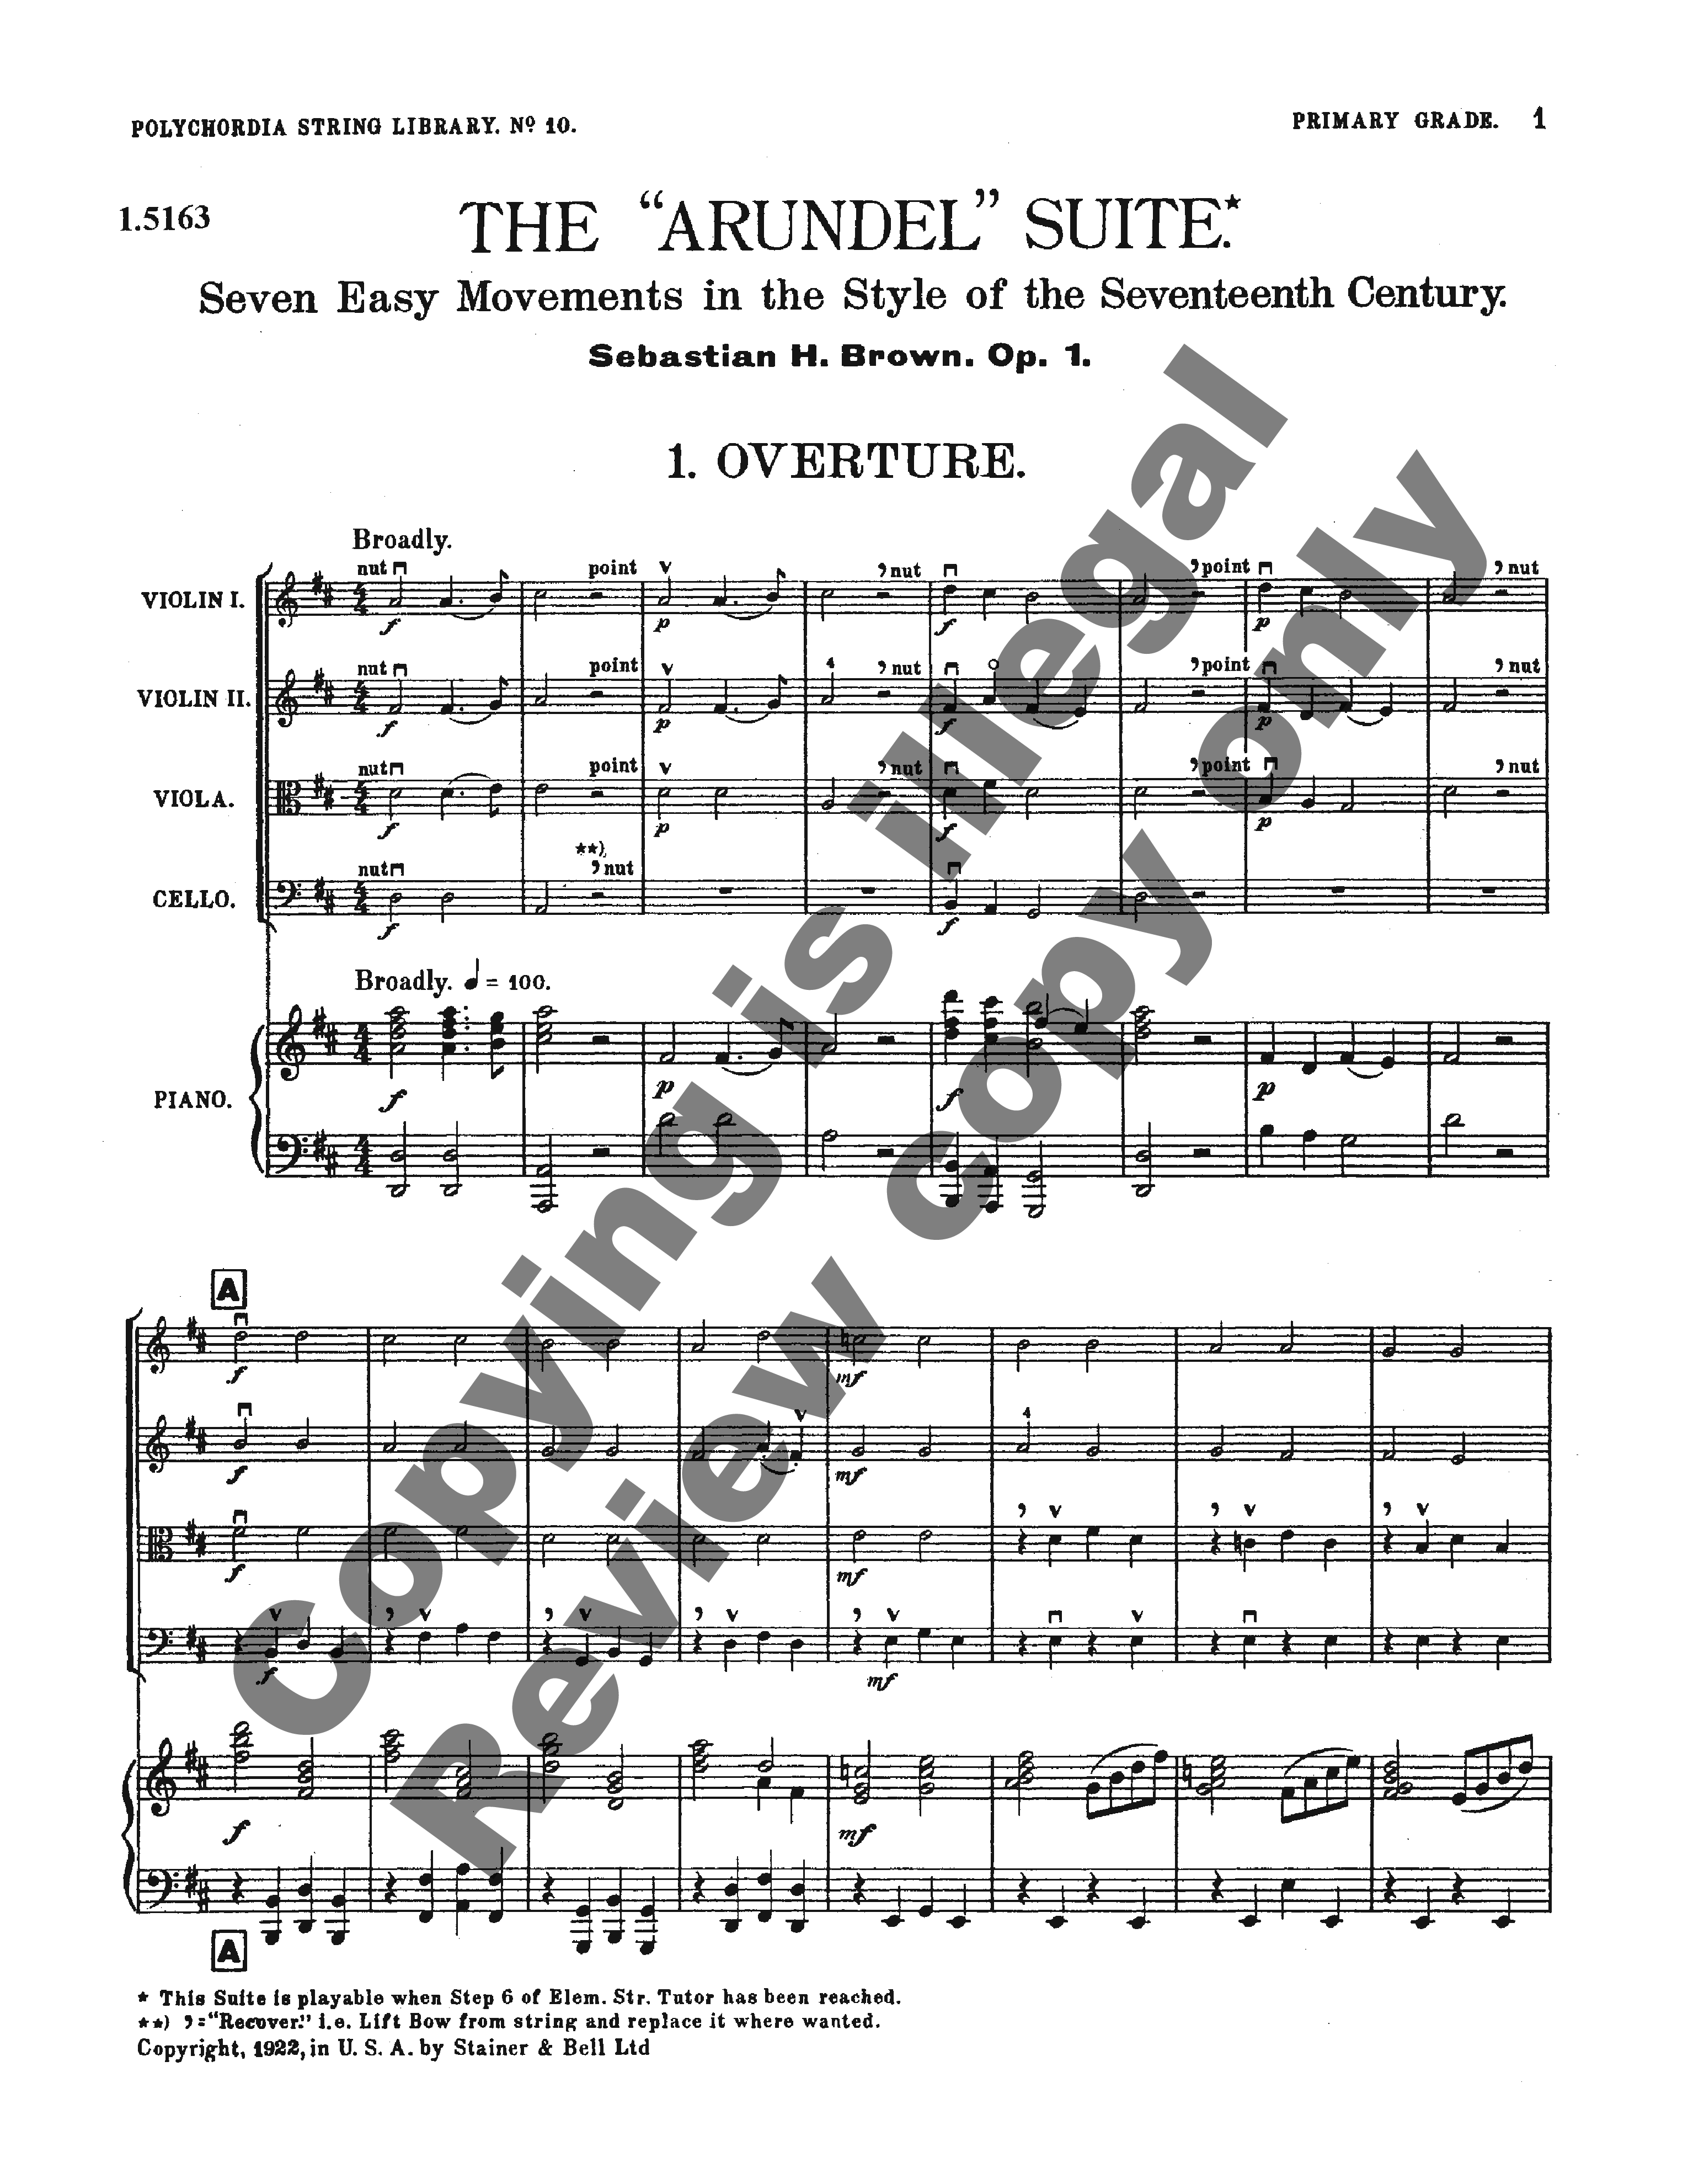 Arundel Suite Score-P.O.P.